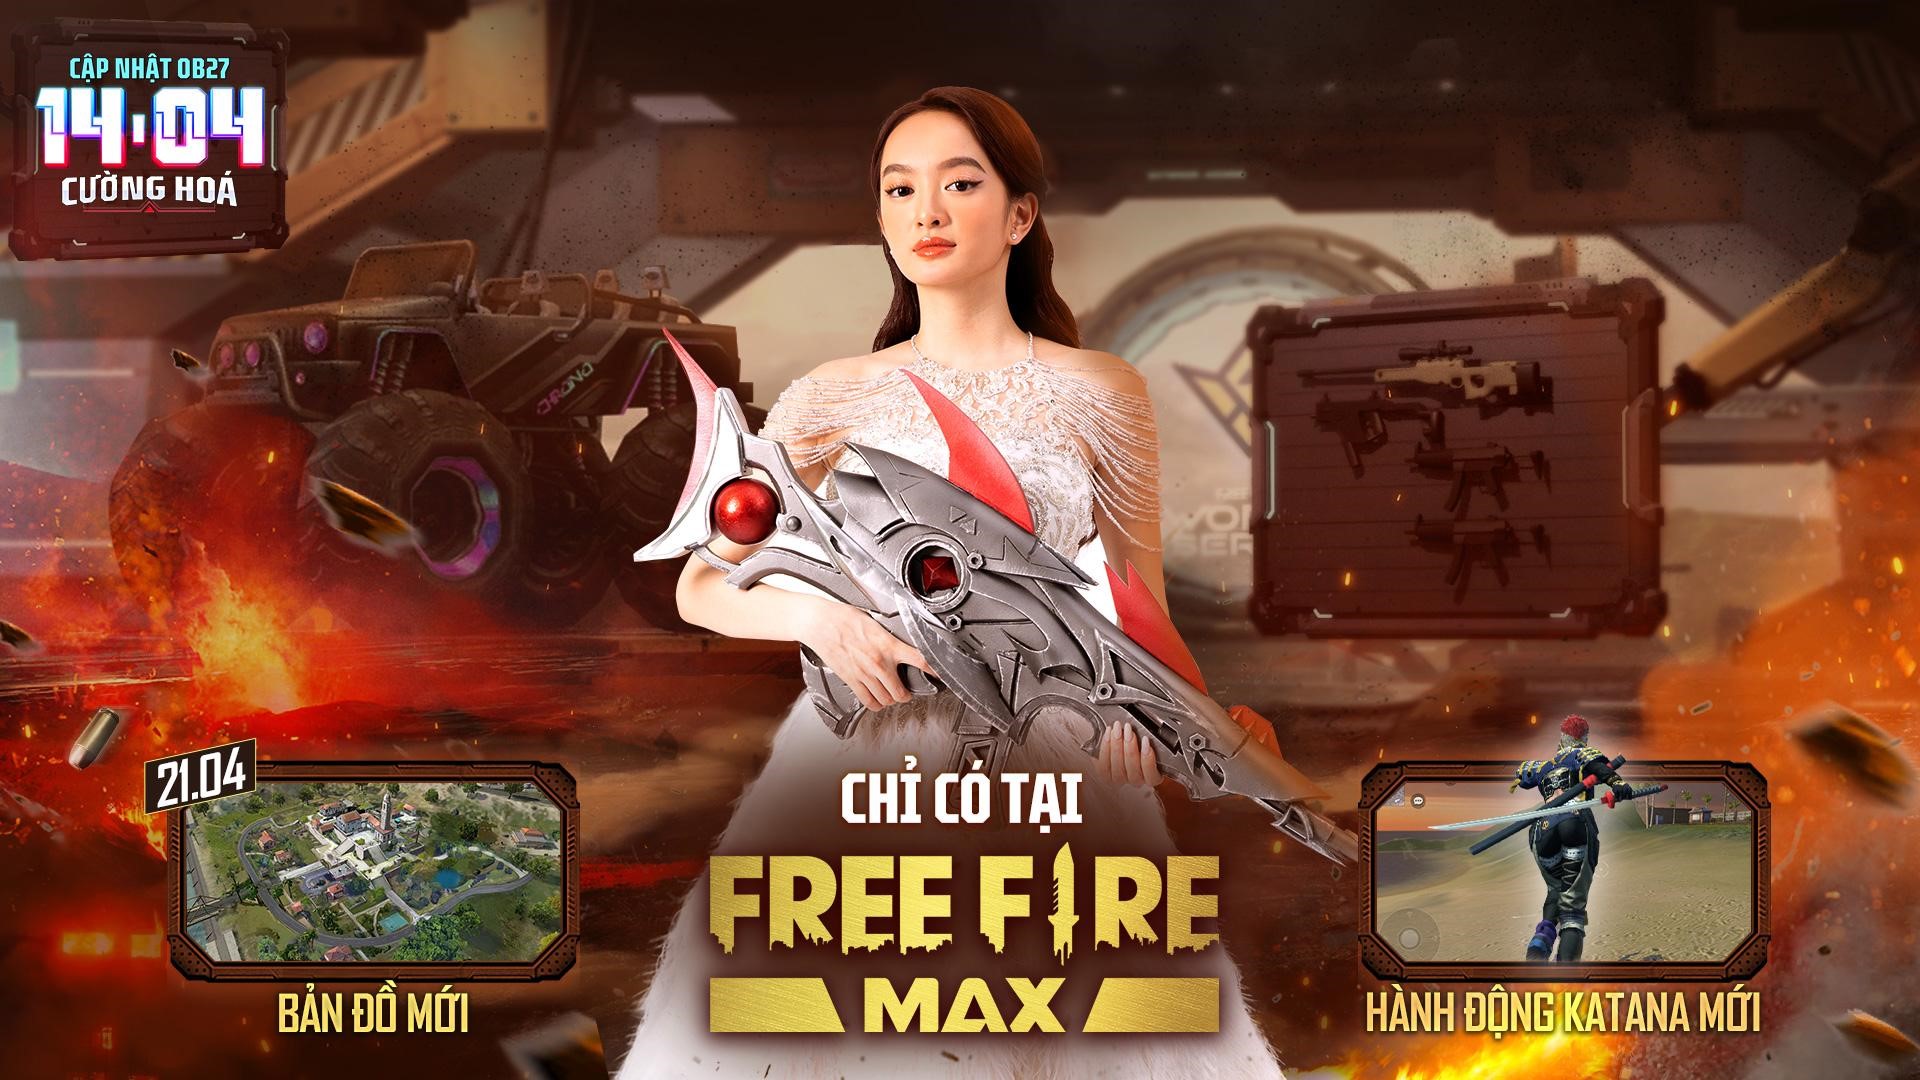 Ngỡ ngàng với Kaity Nguyễn xuất hiện tại sảnh chờ Free Fire Max OB27 - Ảnh 2.